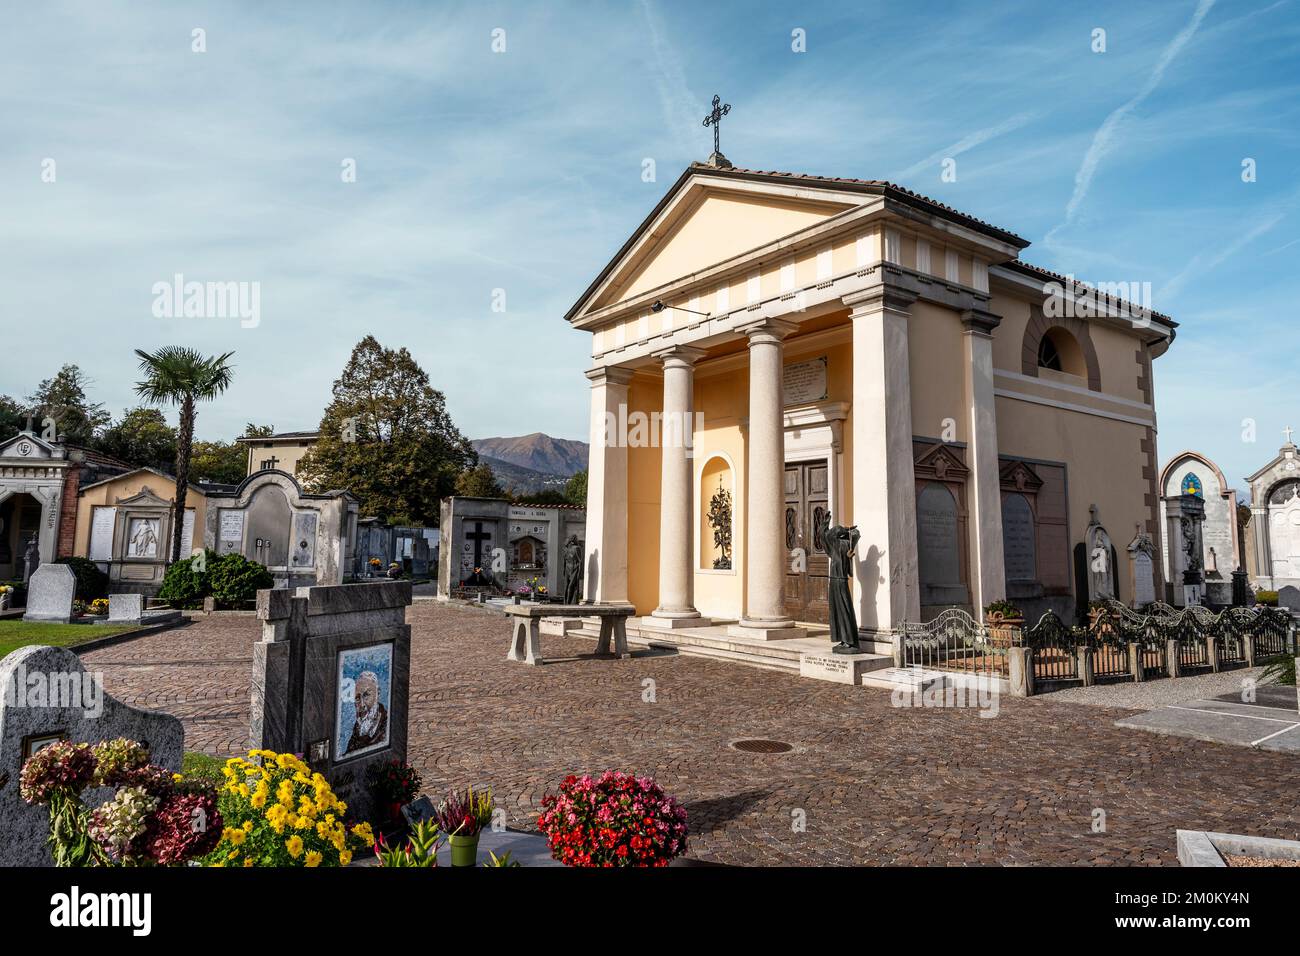 Cementerio de San Abundius, cementerio de Montagnola, un pueblo suizo en el municipio de Collina d'Oro, cantón de Ticino, Suiza Foto de stock